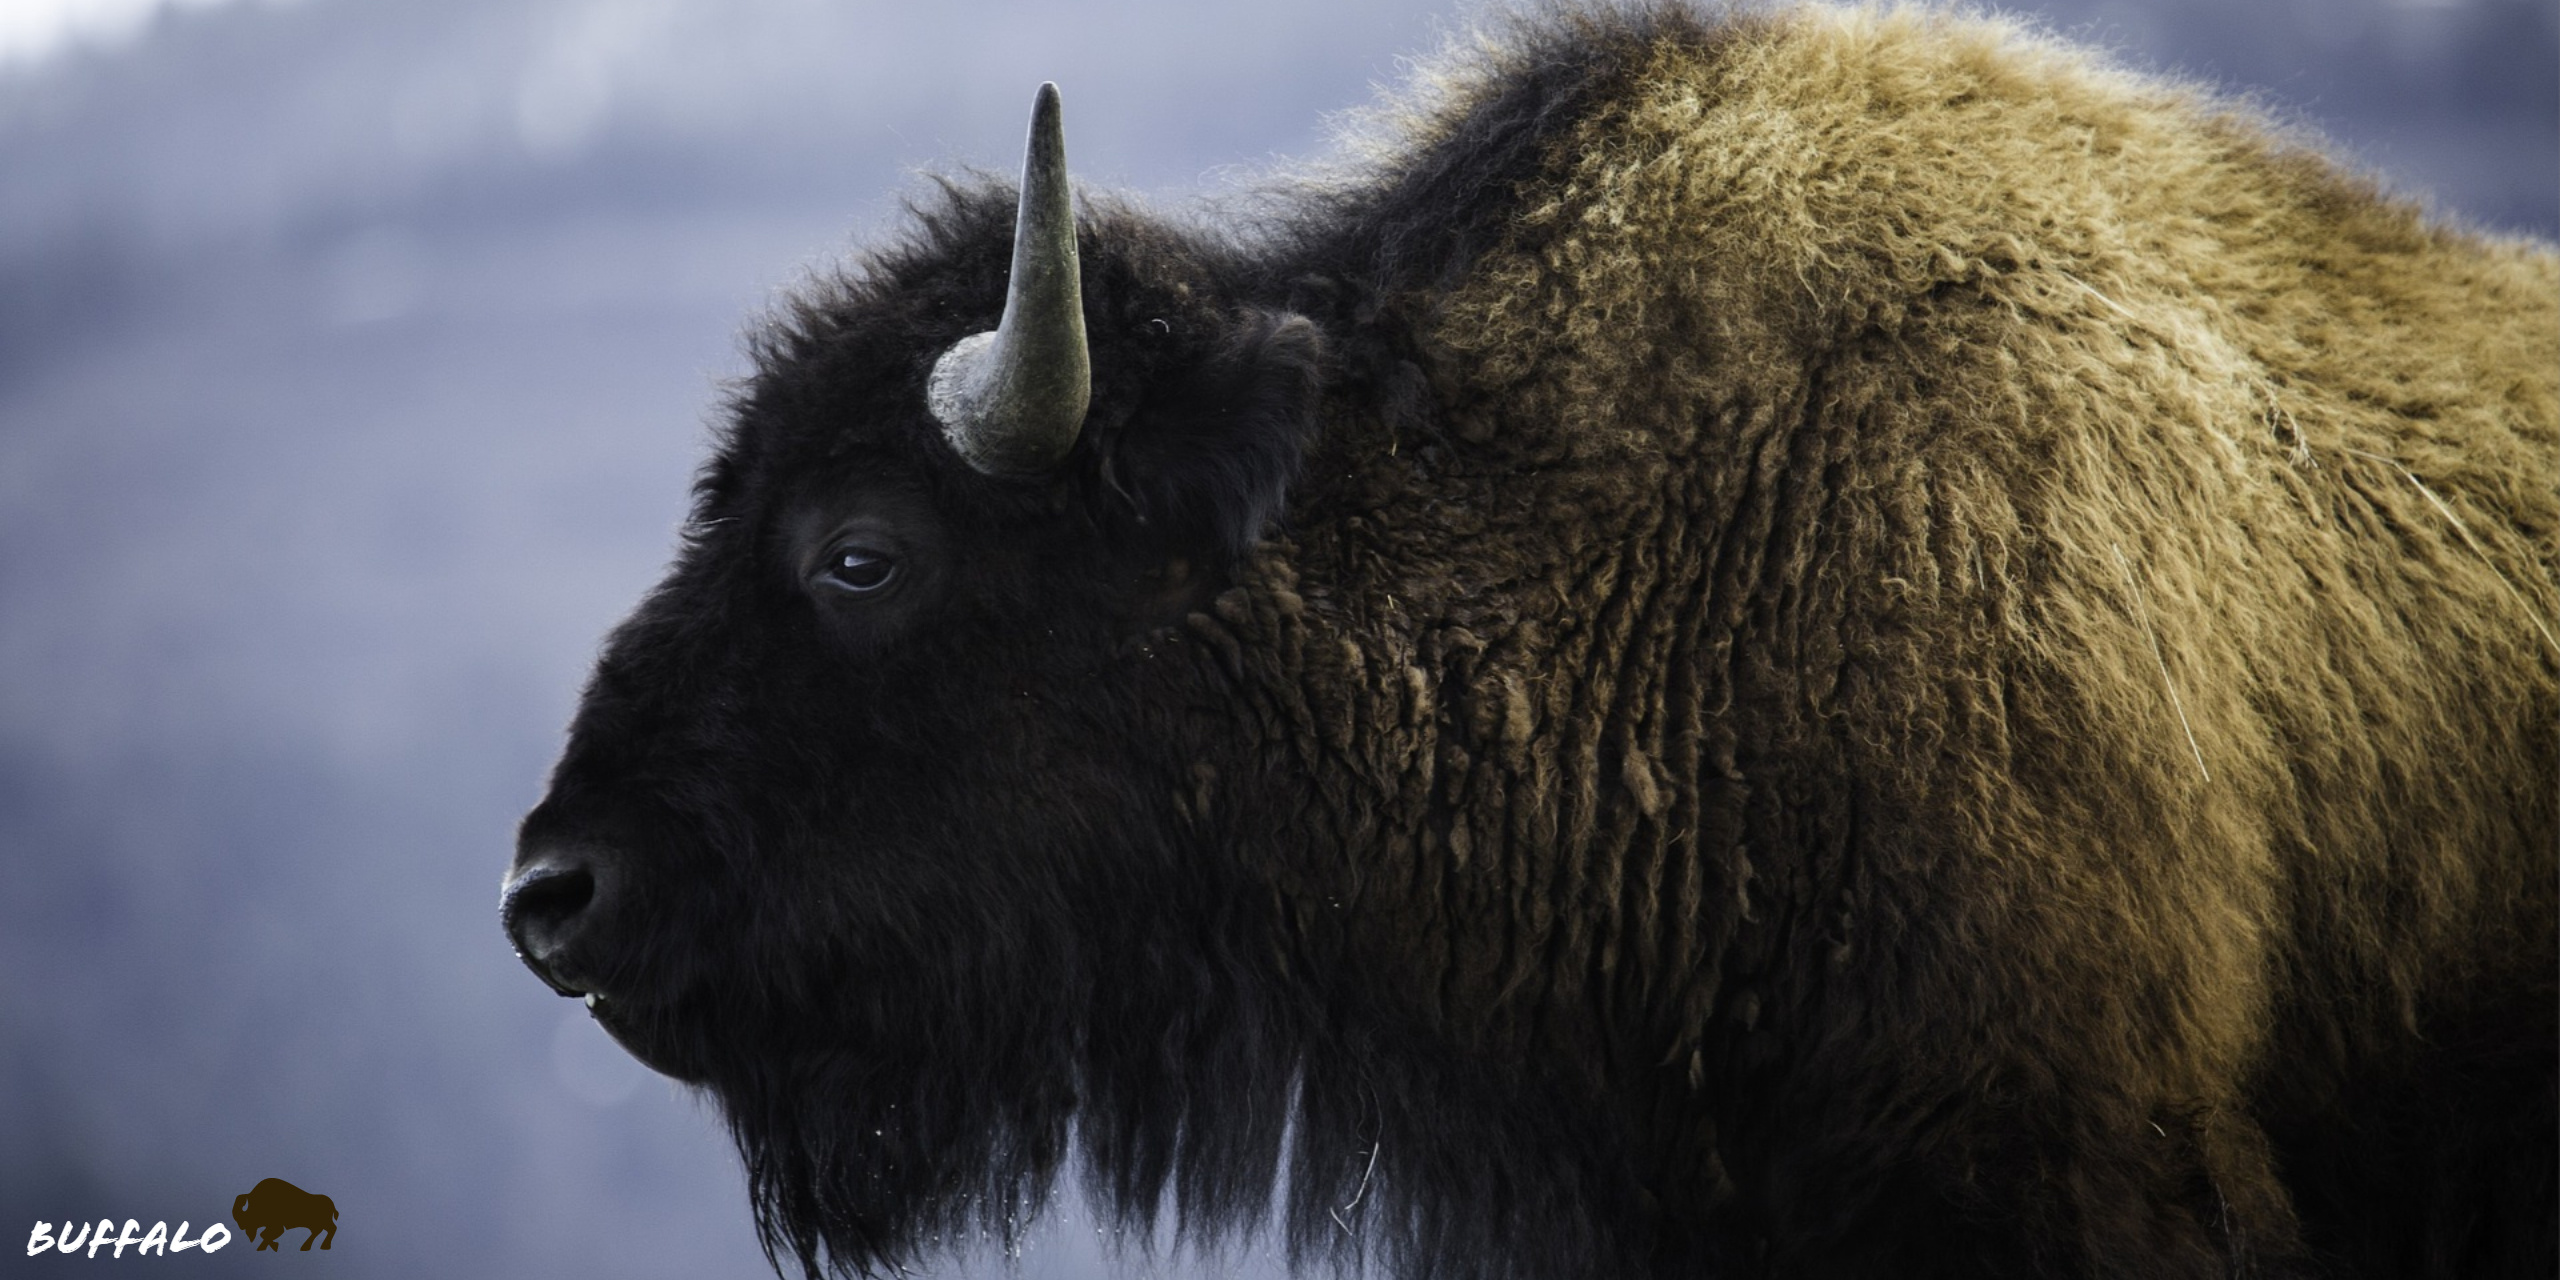 Bison wallpaper for XFCE desktop, Buffalo beauty in high-definition, Eye-catching buffalo imagery, Stunning buffalo background, 2560x1280 Dual Screen Desktop